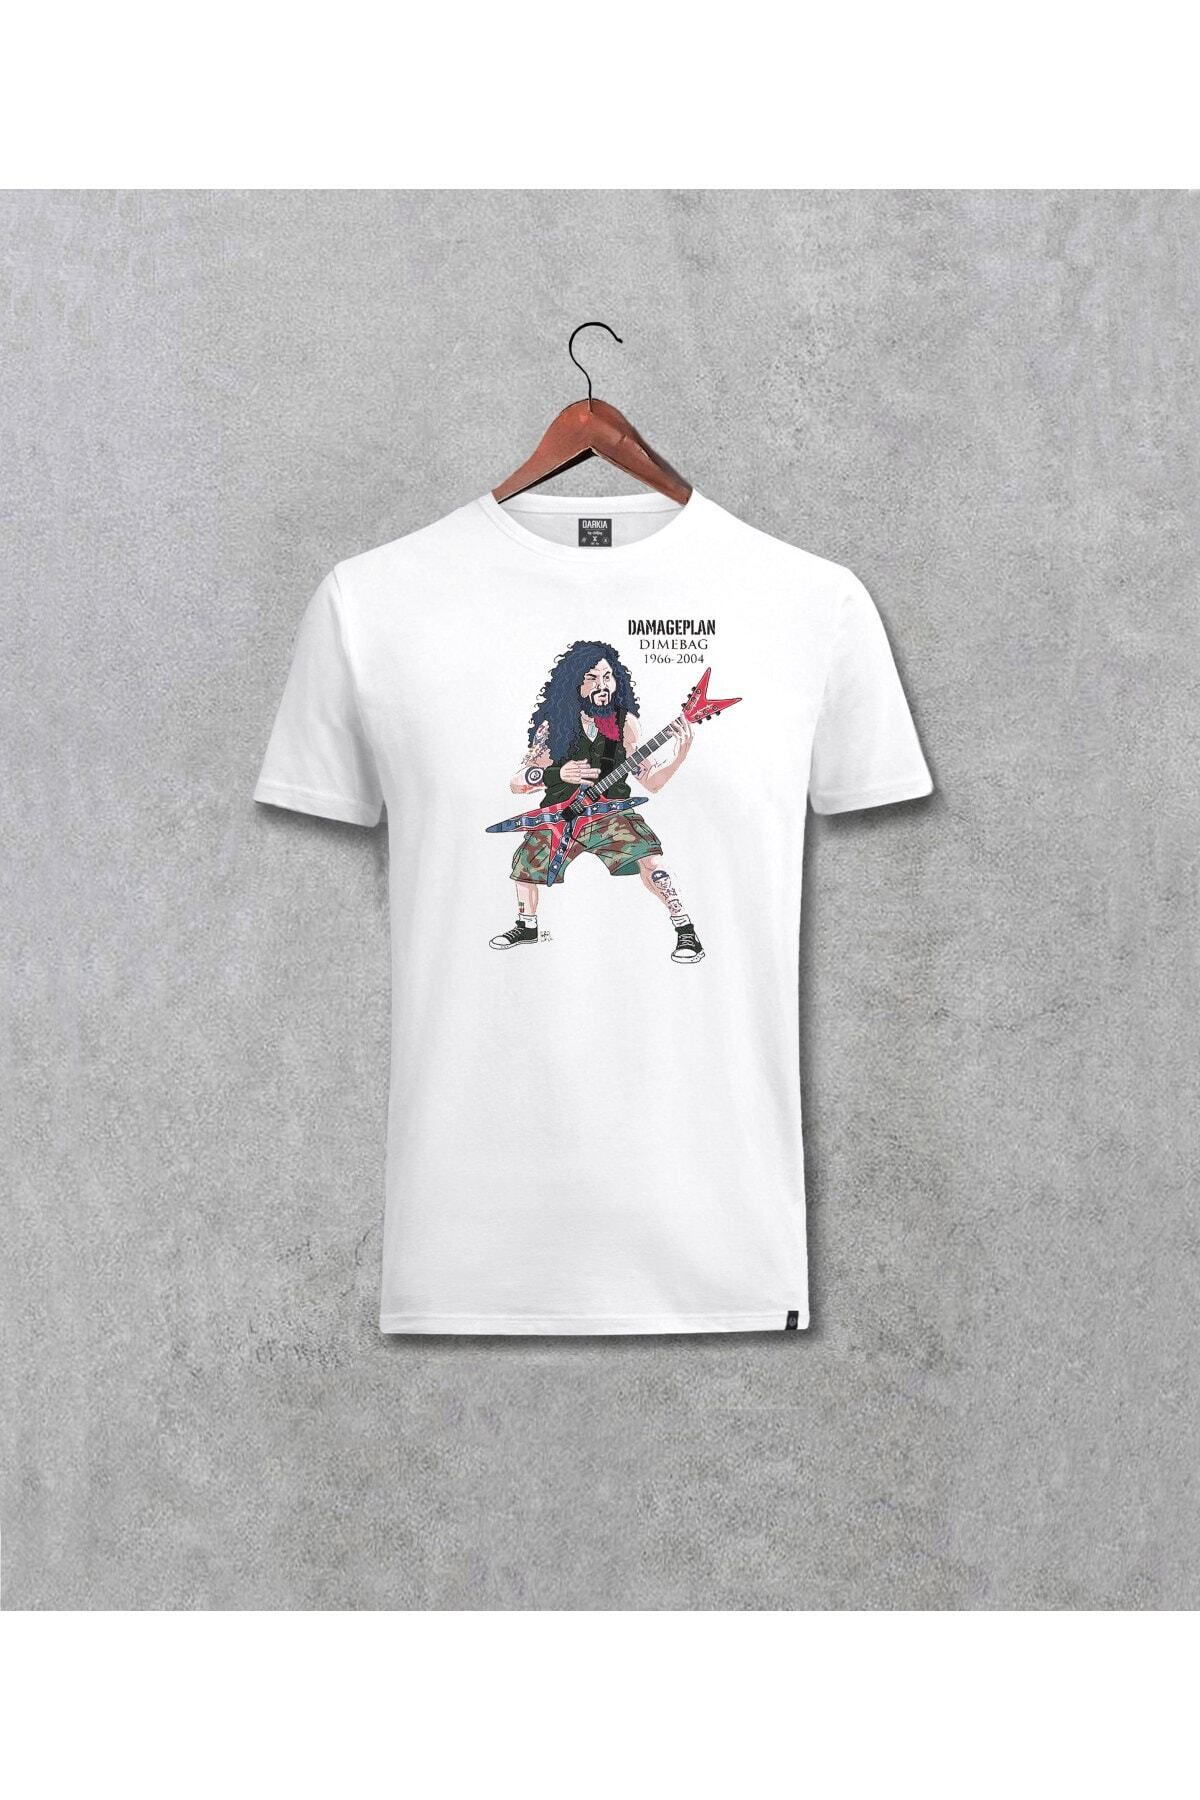 NİCE Pantera Dimebag Darell Tasarımı Baskılı (unisex) T-shirt